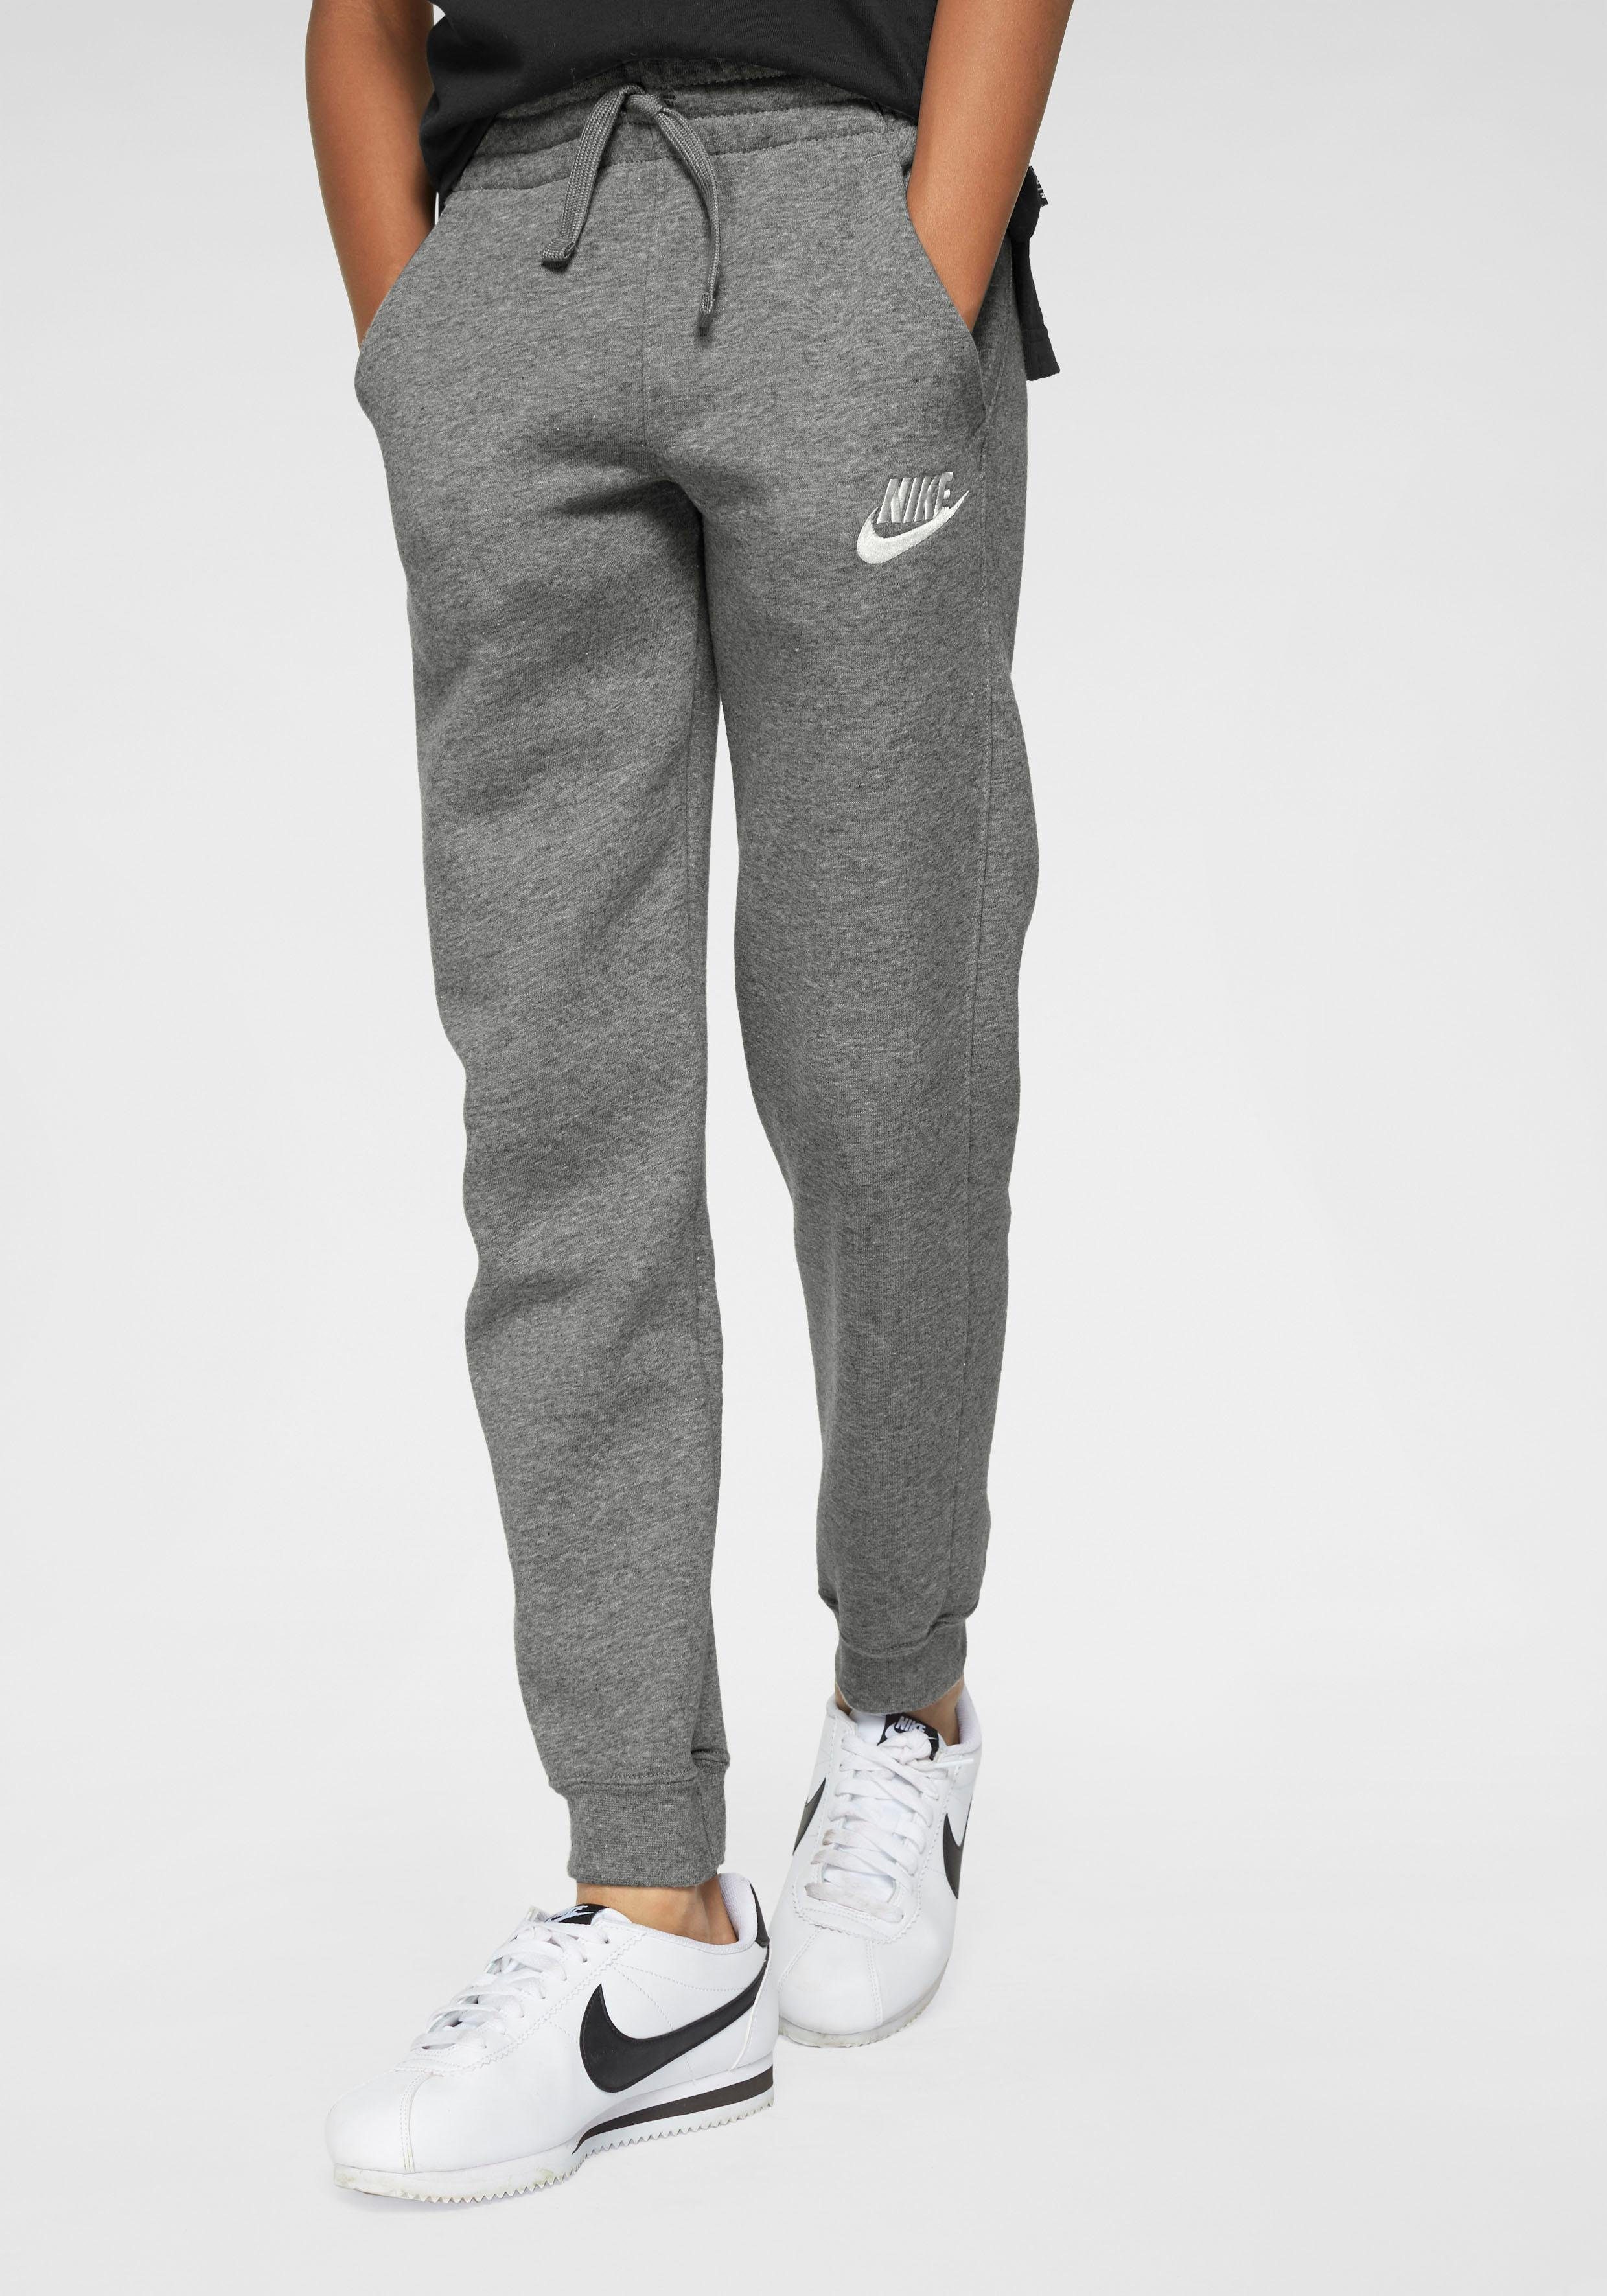 Neue Artikel sind eingetroffen 1 FLEECE CLUB Sportswear JOGGER Nike grau-meliert NSW Jogginghose B PANT